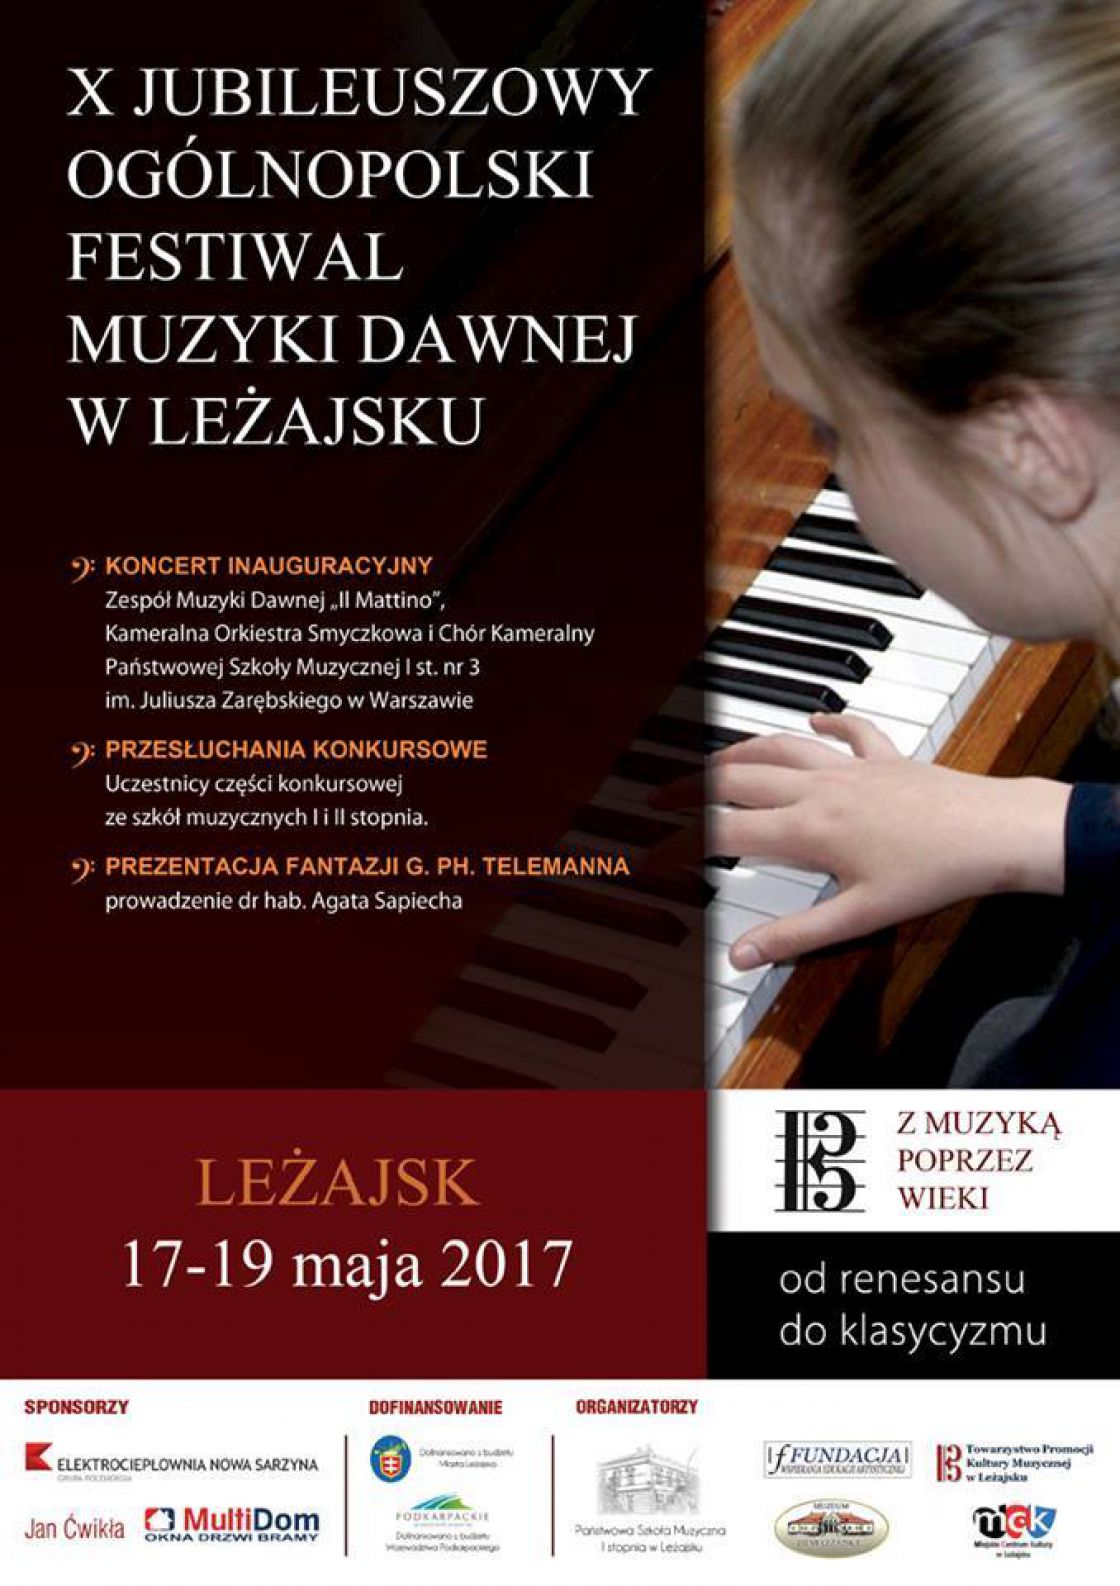 X Jubileuszowy Ogólnopolski Festiwal Muzyki Dawnej w Leżajsku